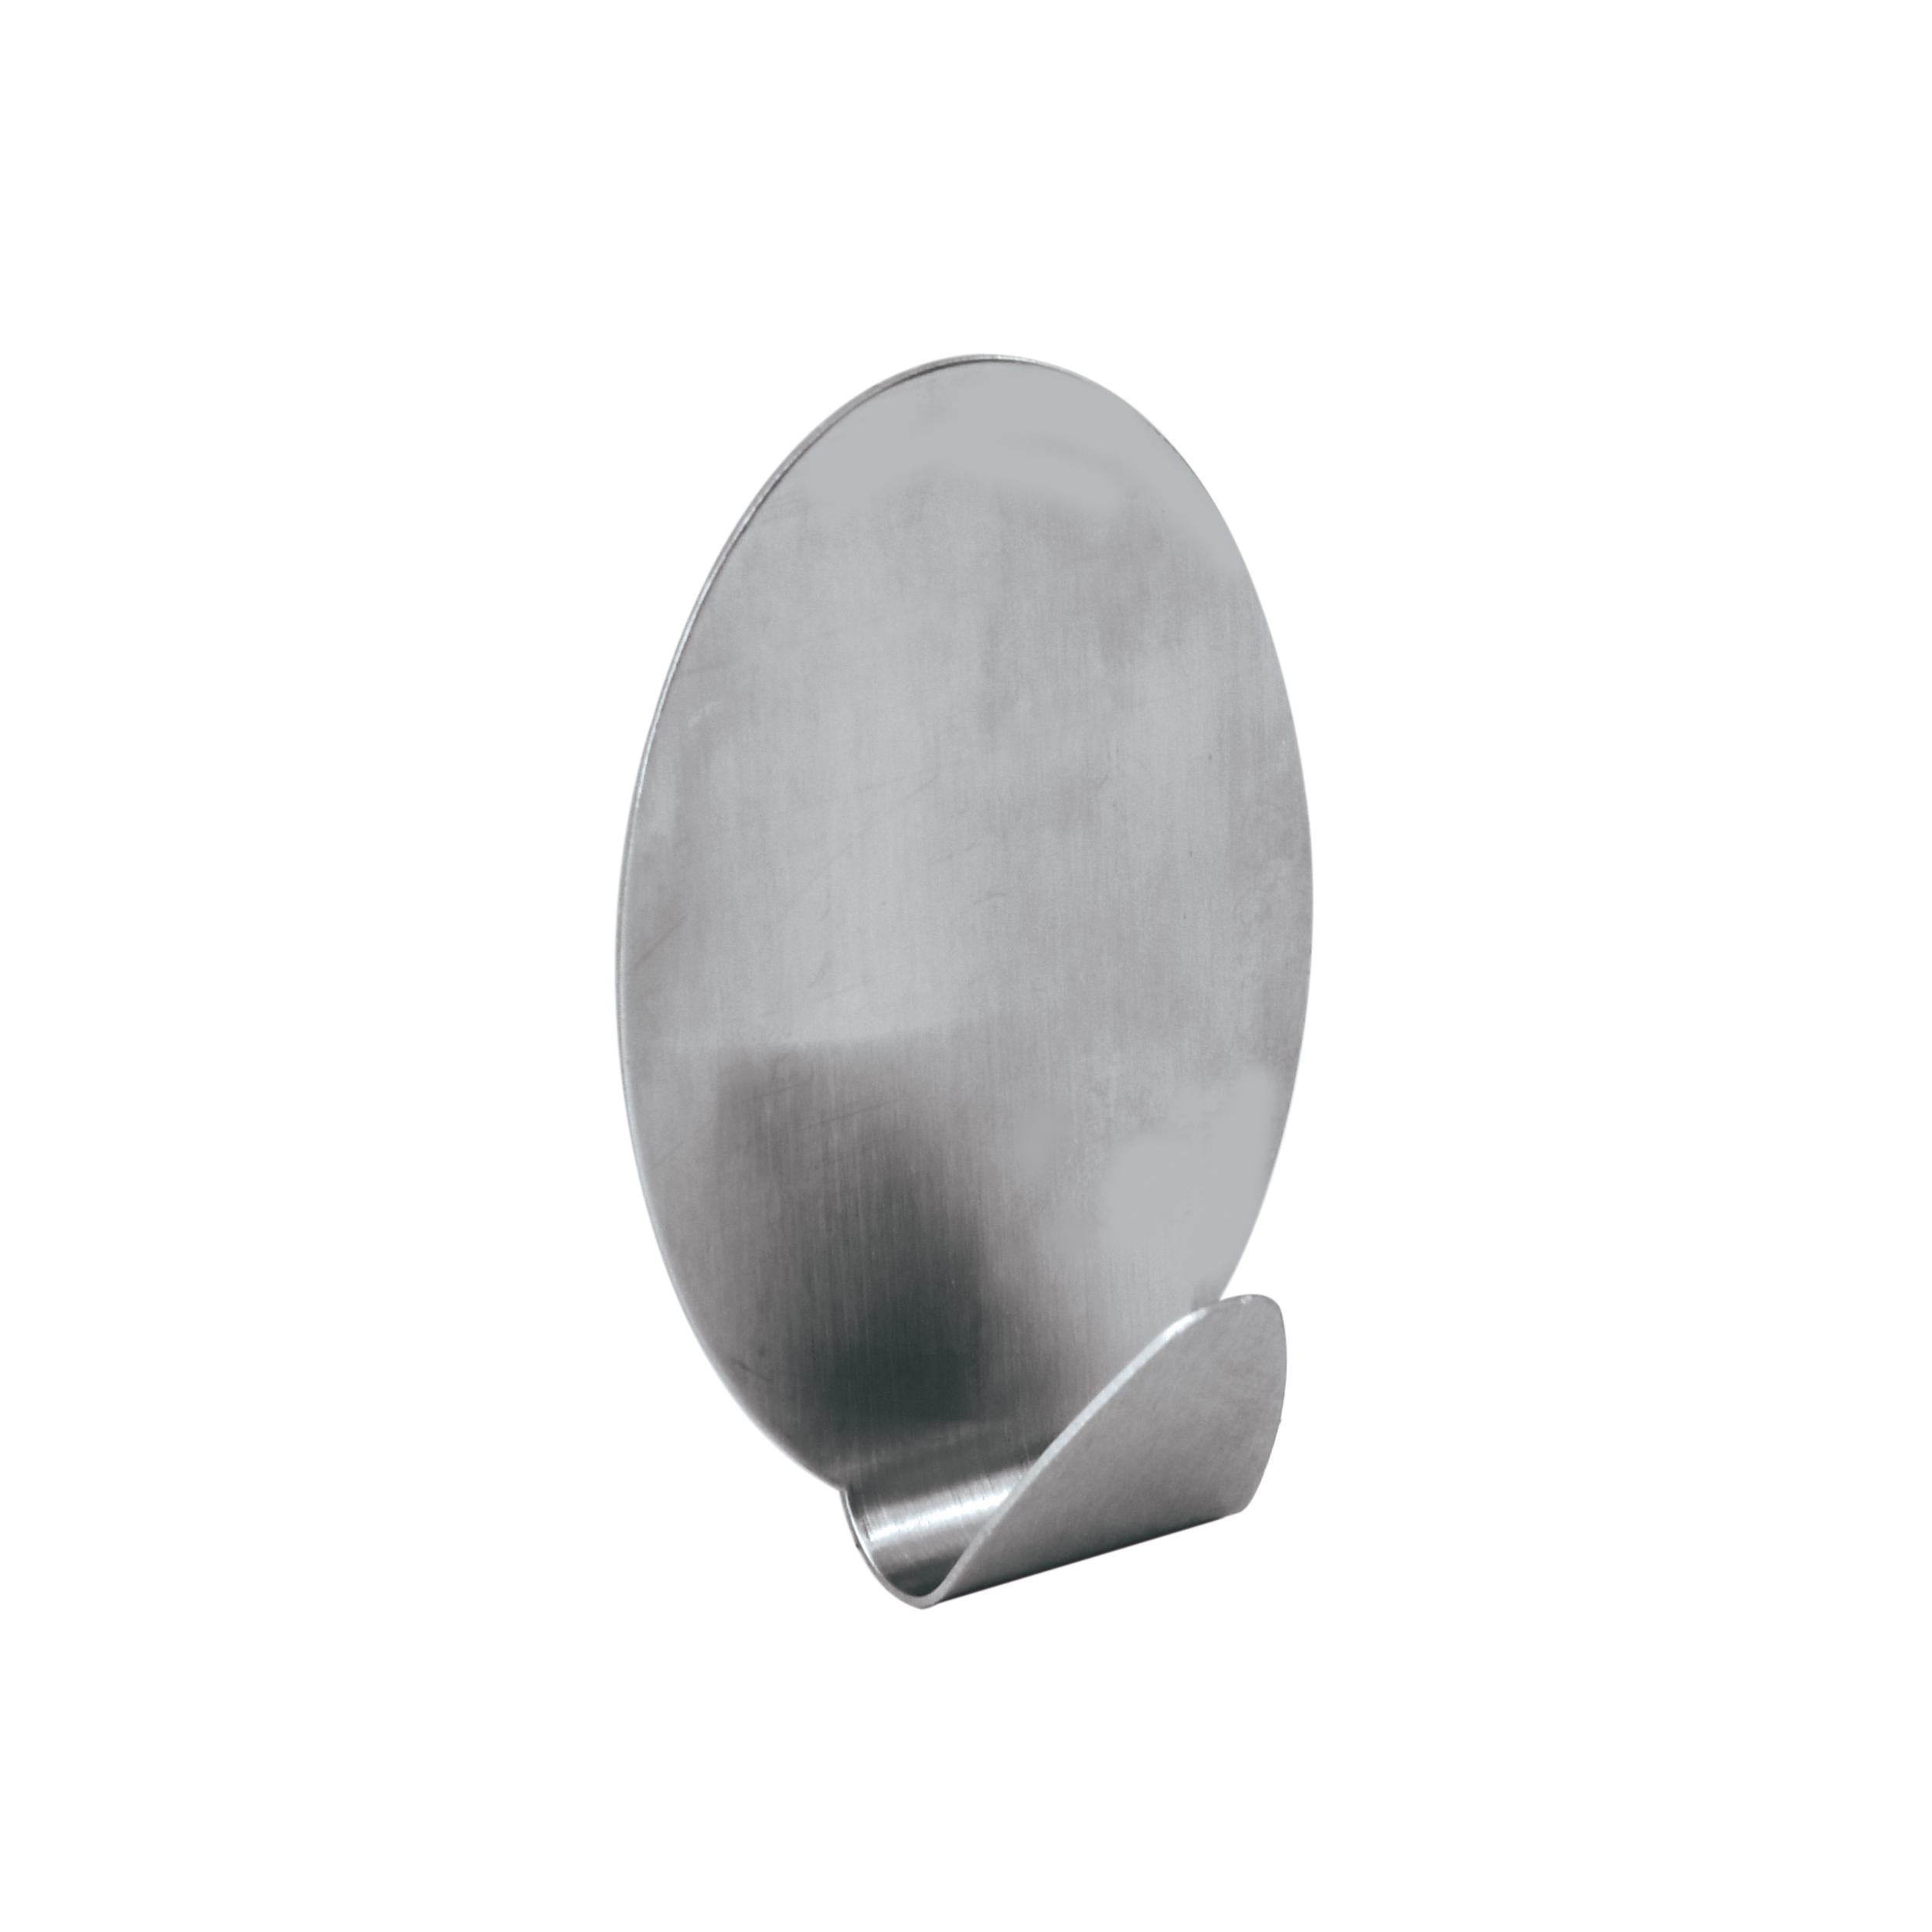 KUKA ZA PEŠKIRE  srebrna  metal  - srebrna, Konvencionalno, metal (4,5/7/3cm) - Homeware